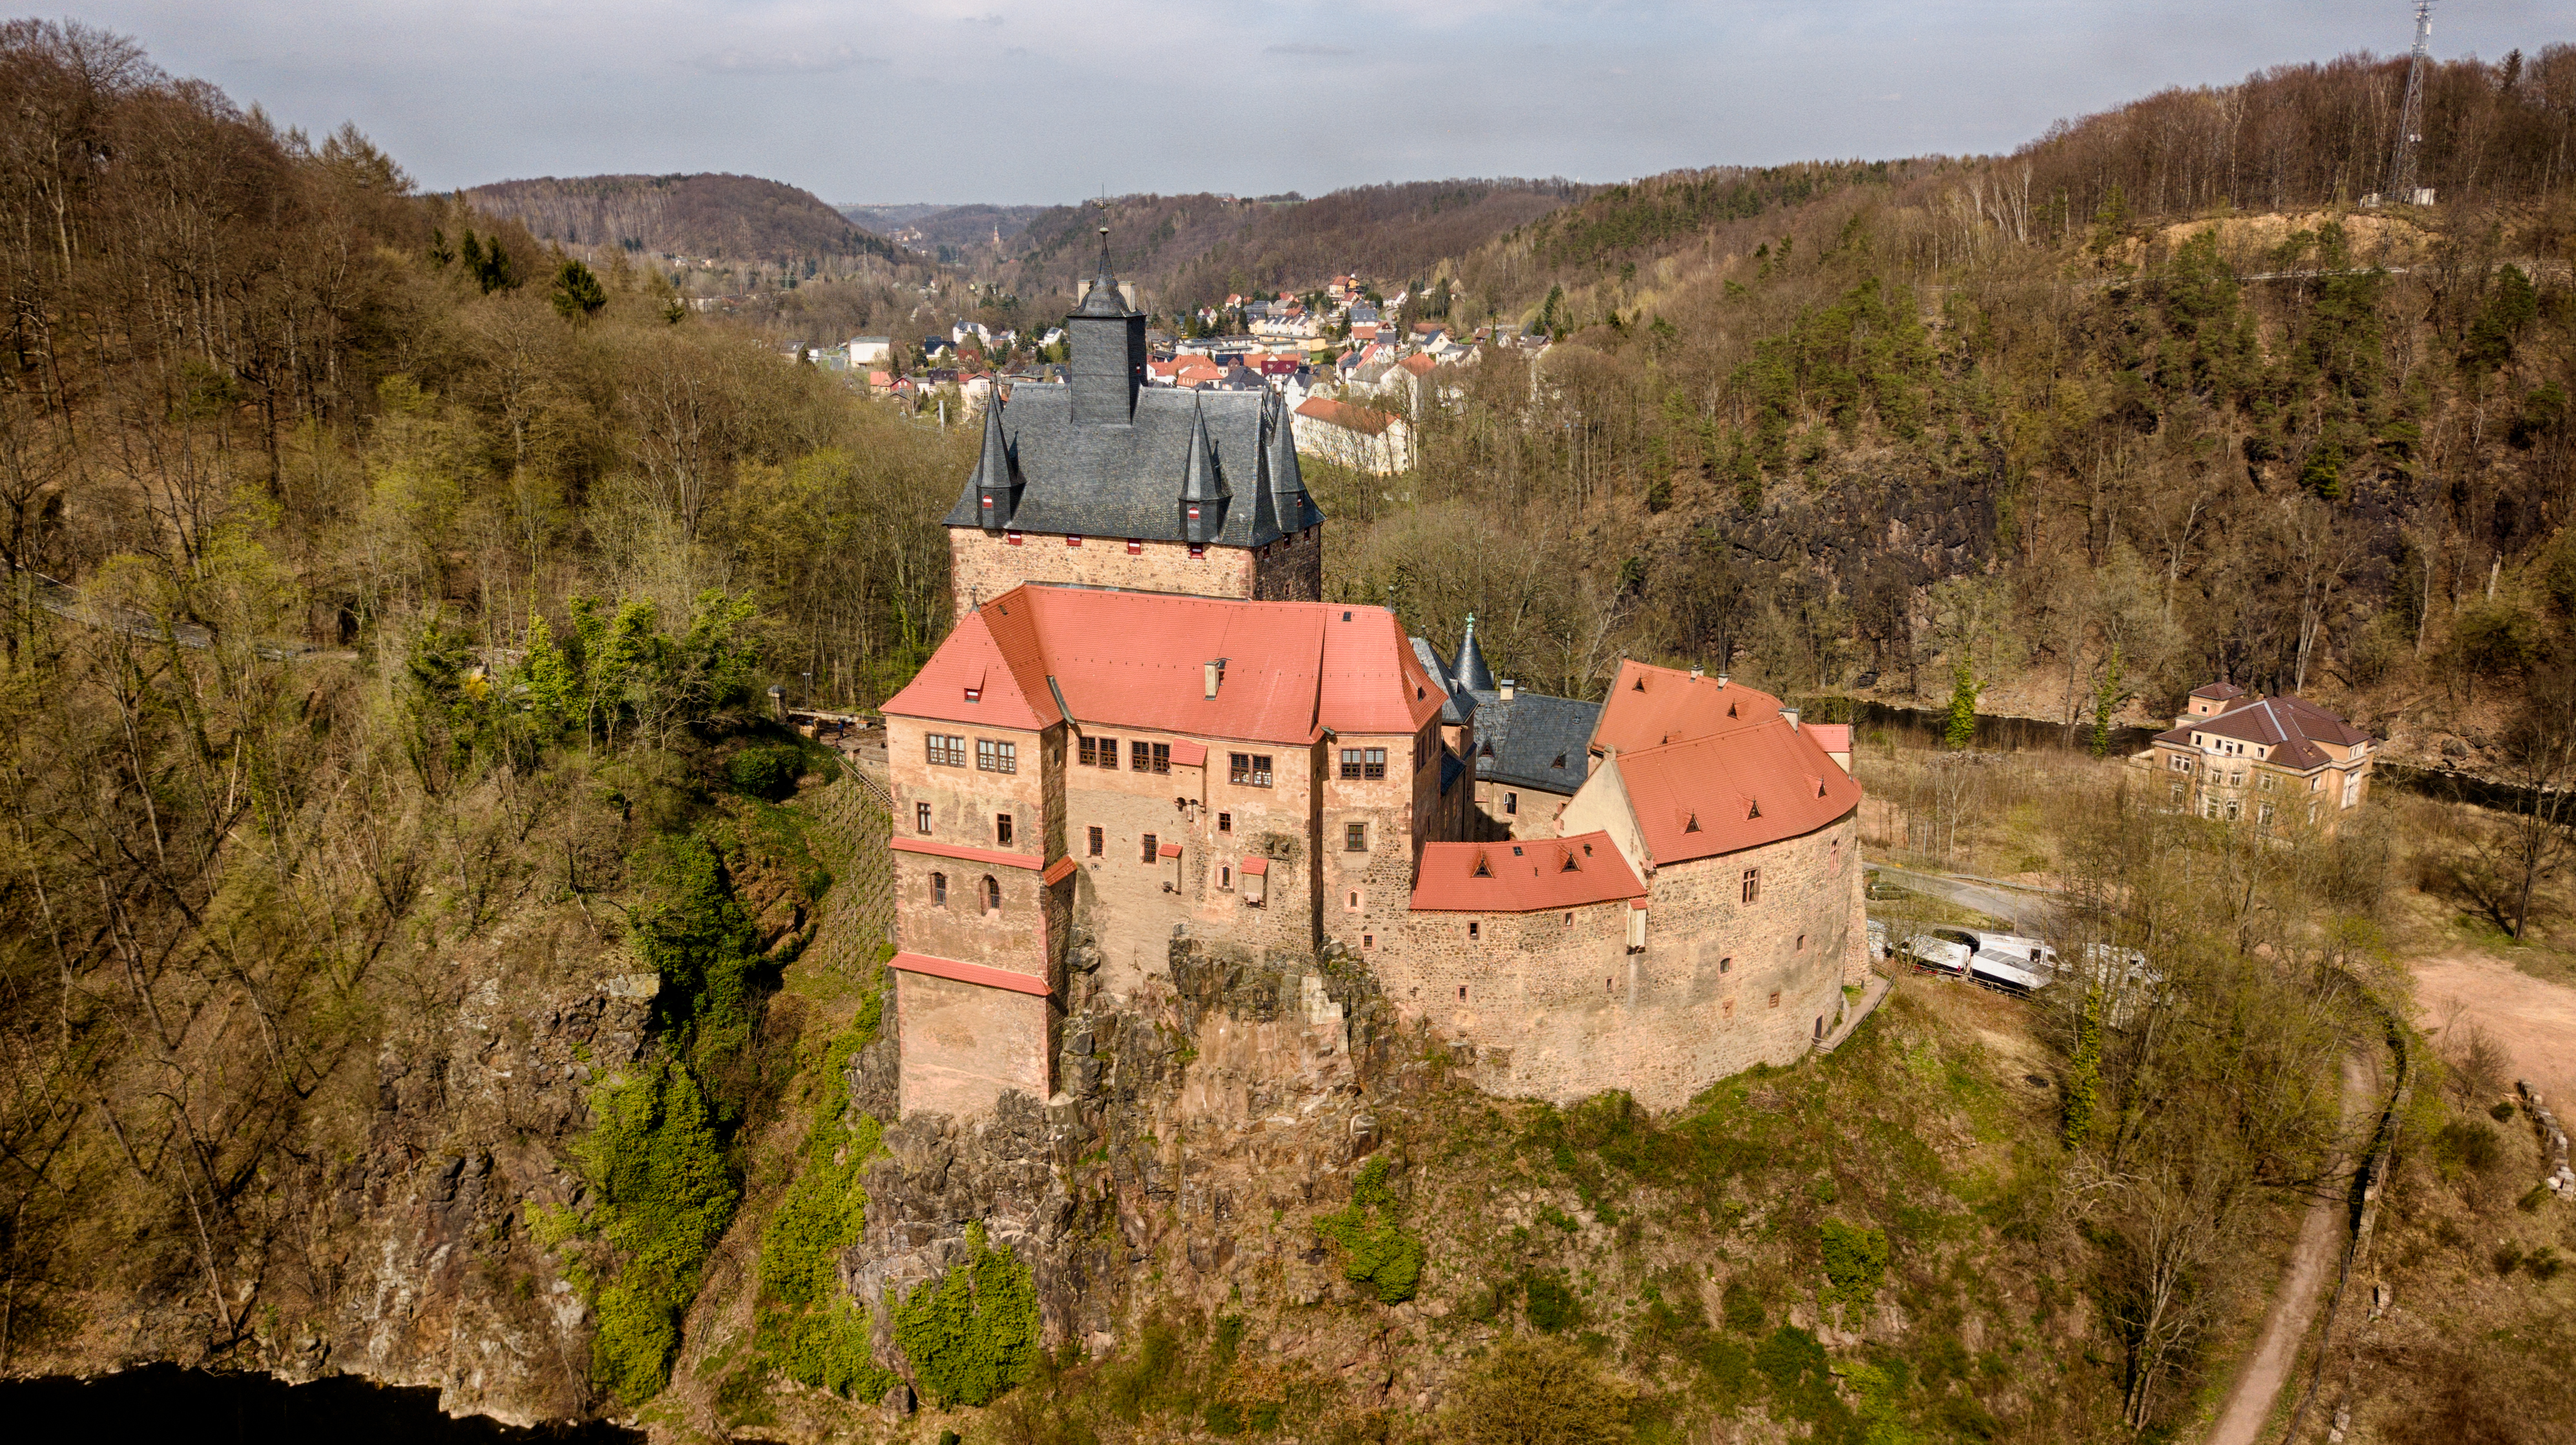 Burg Kriebstein, Germany, 2018